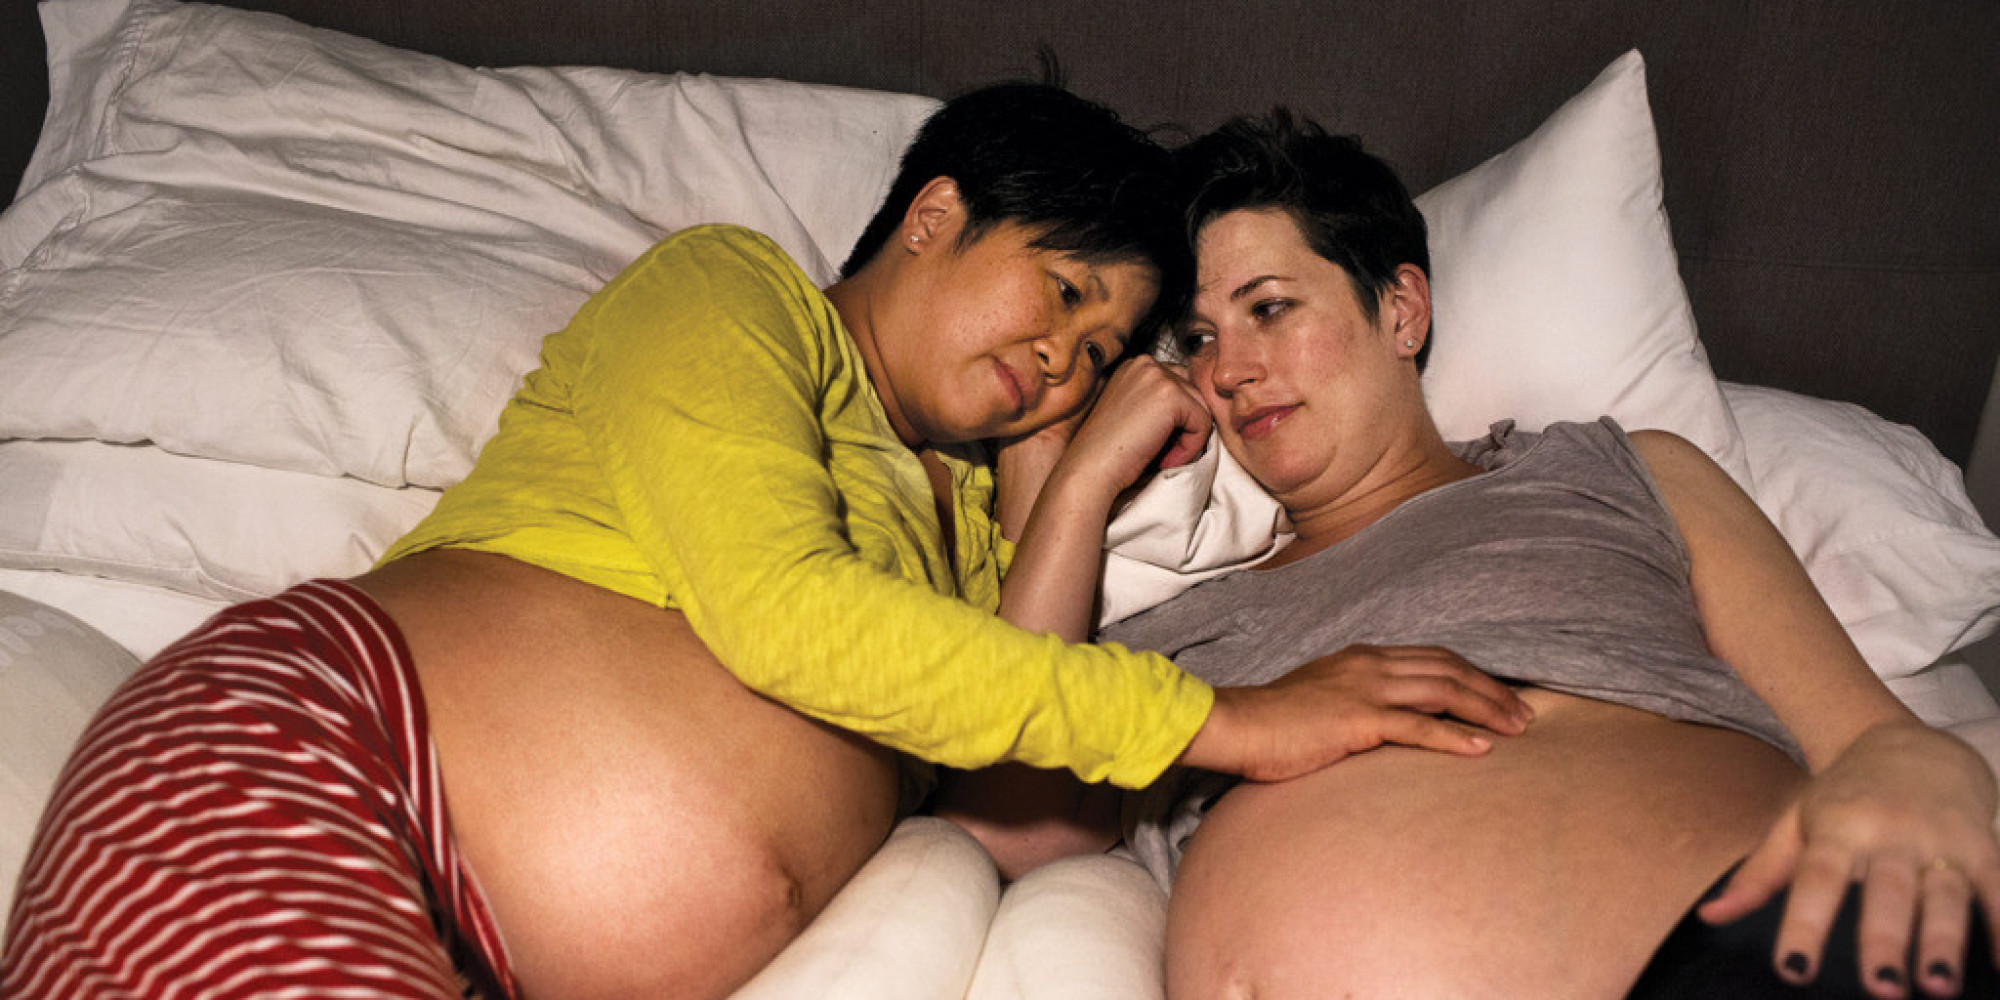 Lesbians Get Pregnant 94